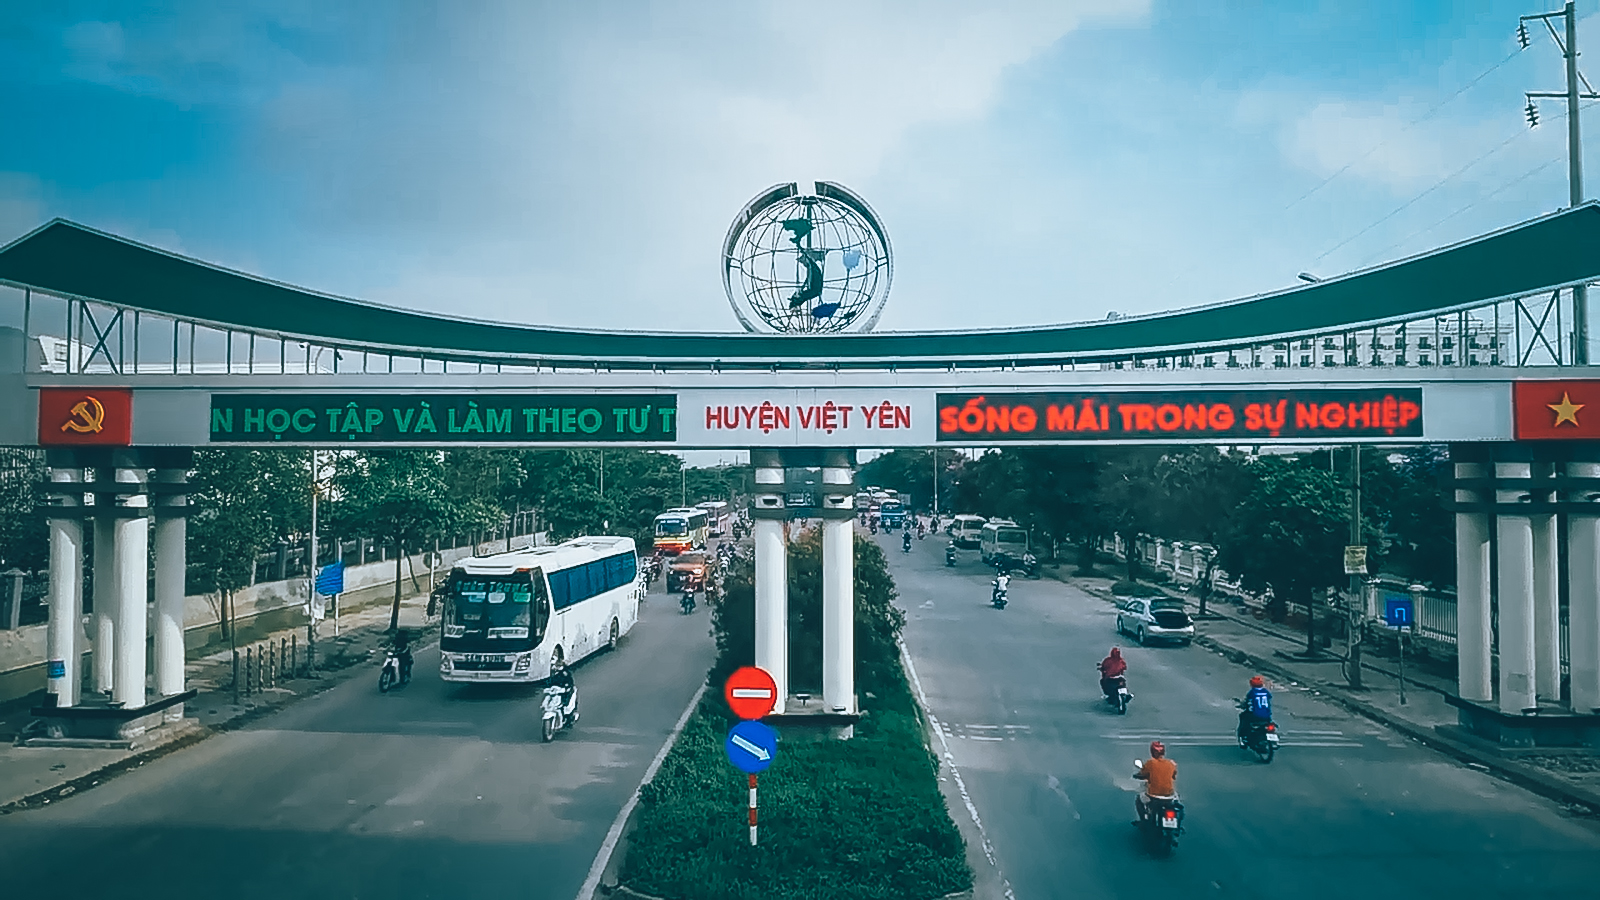 Viet Yen - Bac Giang